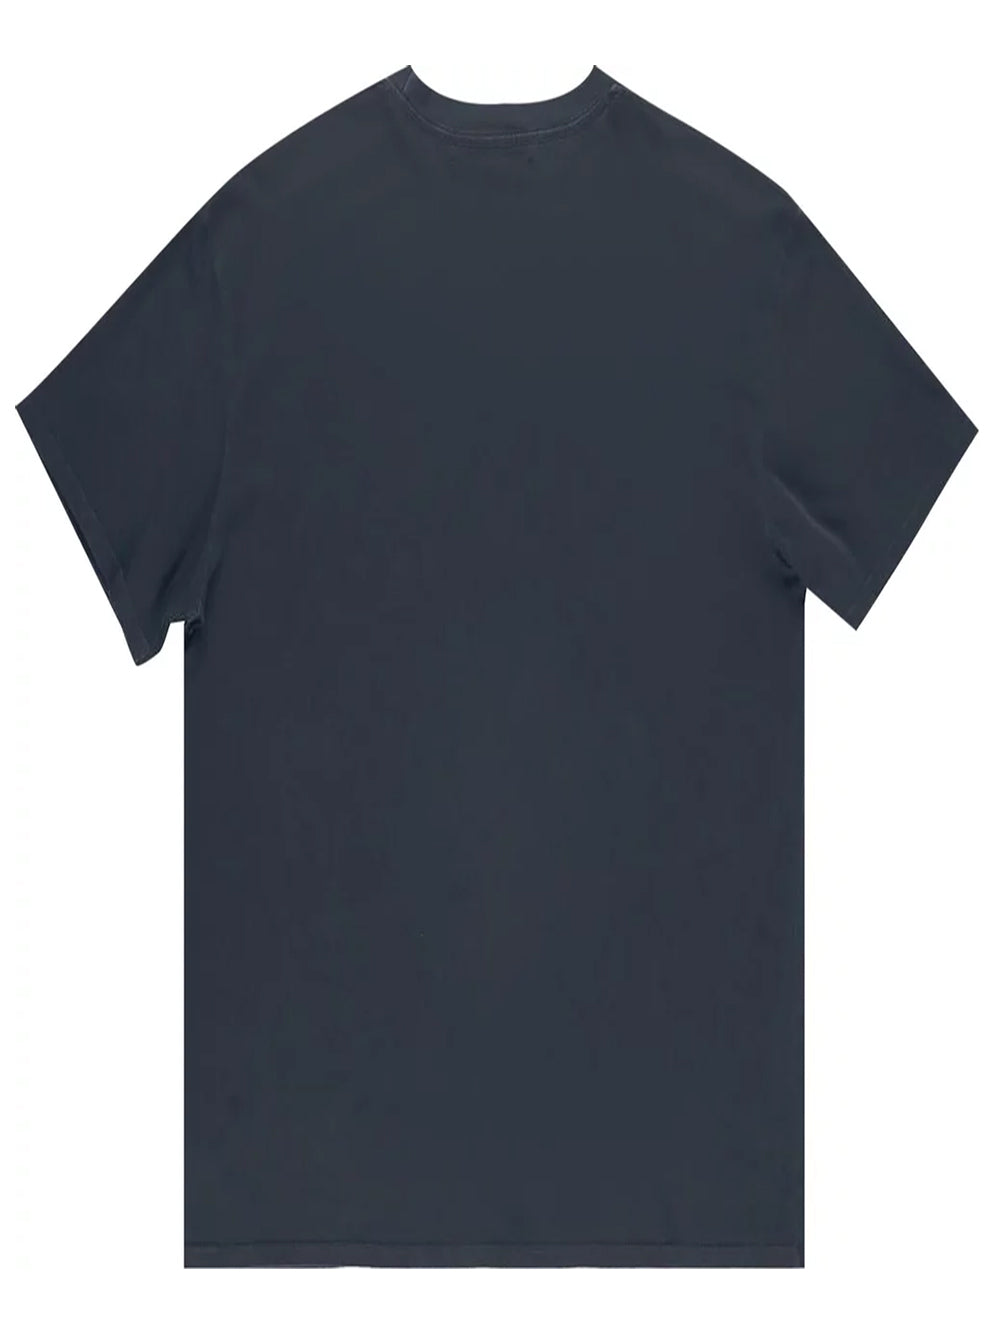 NAHMIAS WTF Is Summerland Graphic Print T-Shirt Vintage Black - MAISONDEFASHION.COM